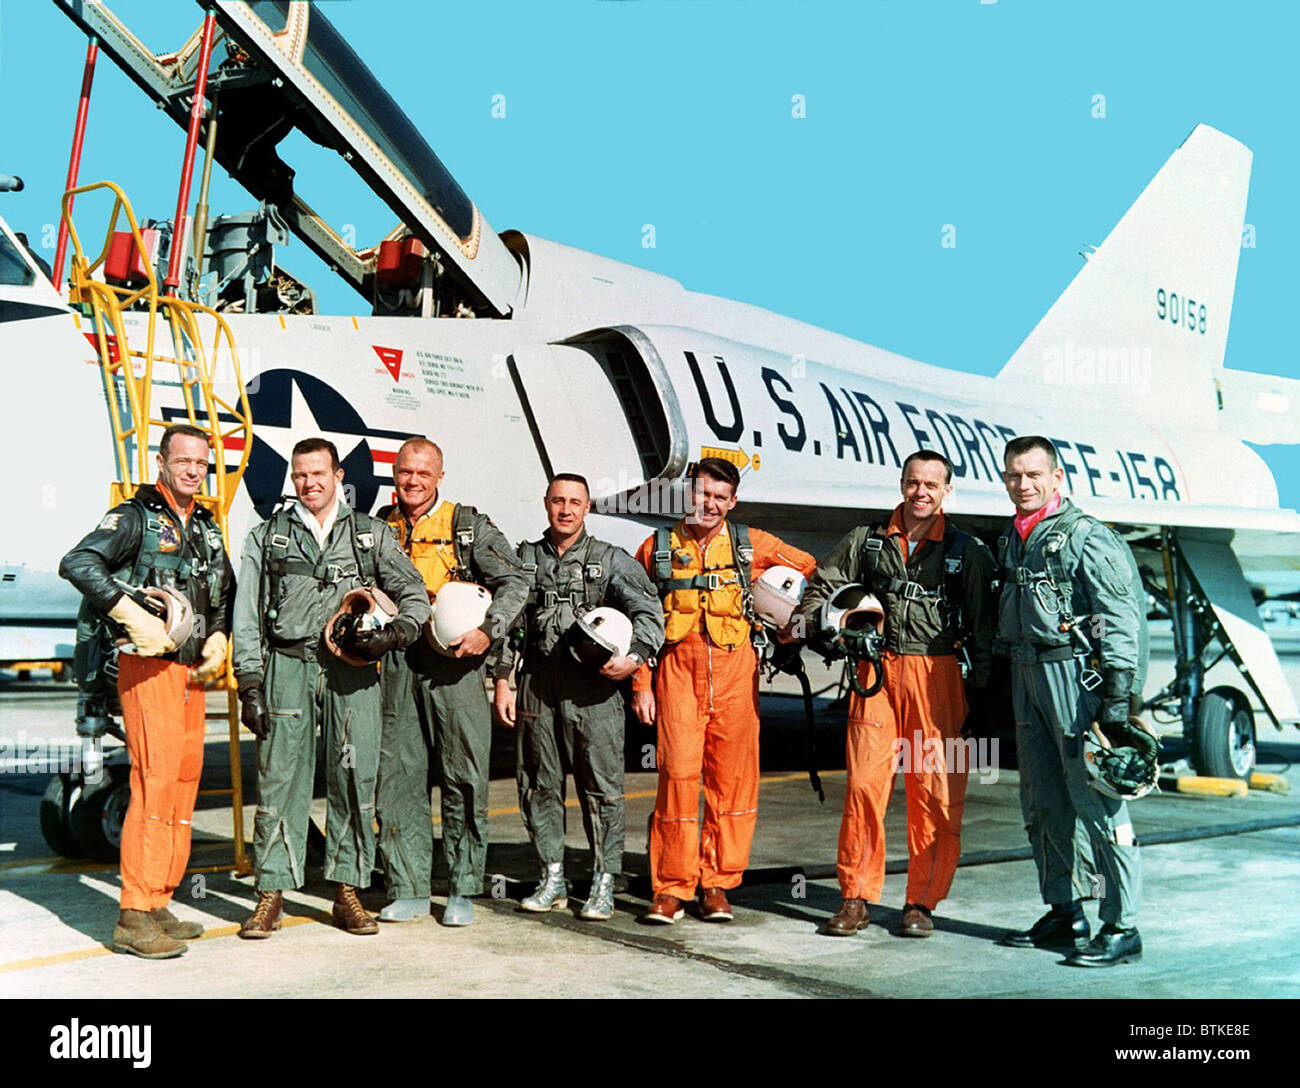 Ursprünglichen sieben Projekt Mercury Astronauten stehen neben einer Convair 106 B Flugzeug. Links nach rechts, M. Scott Carpenter, L. Gordon Cooper Jr., John H. Glenn Jr., Virgil I. Grissom, Walter M. Schirra Jr., Alan B. Shepard Jr. und Donald K. Slayton. Jeder machte Boden brechen Raumflüge zwischen 1961-1963. Stockfoto